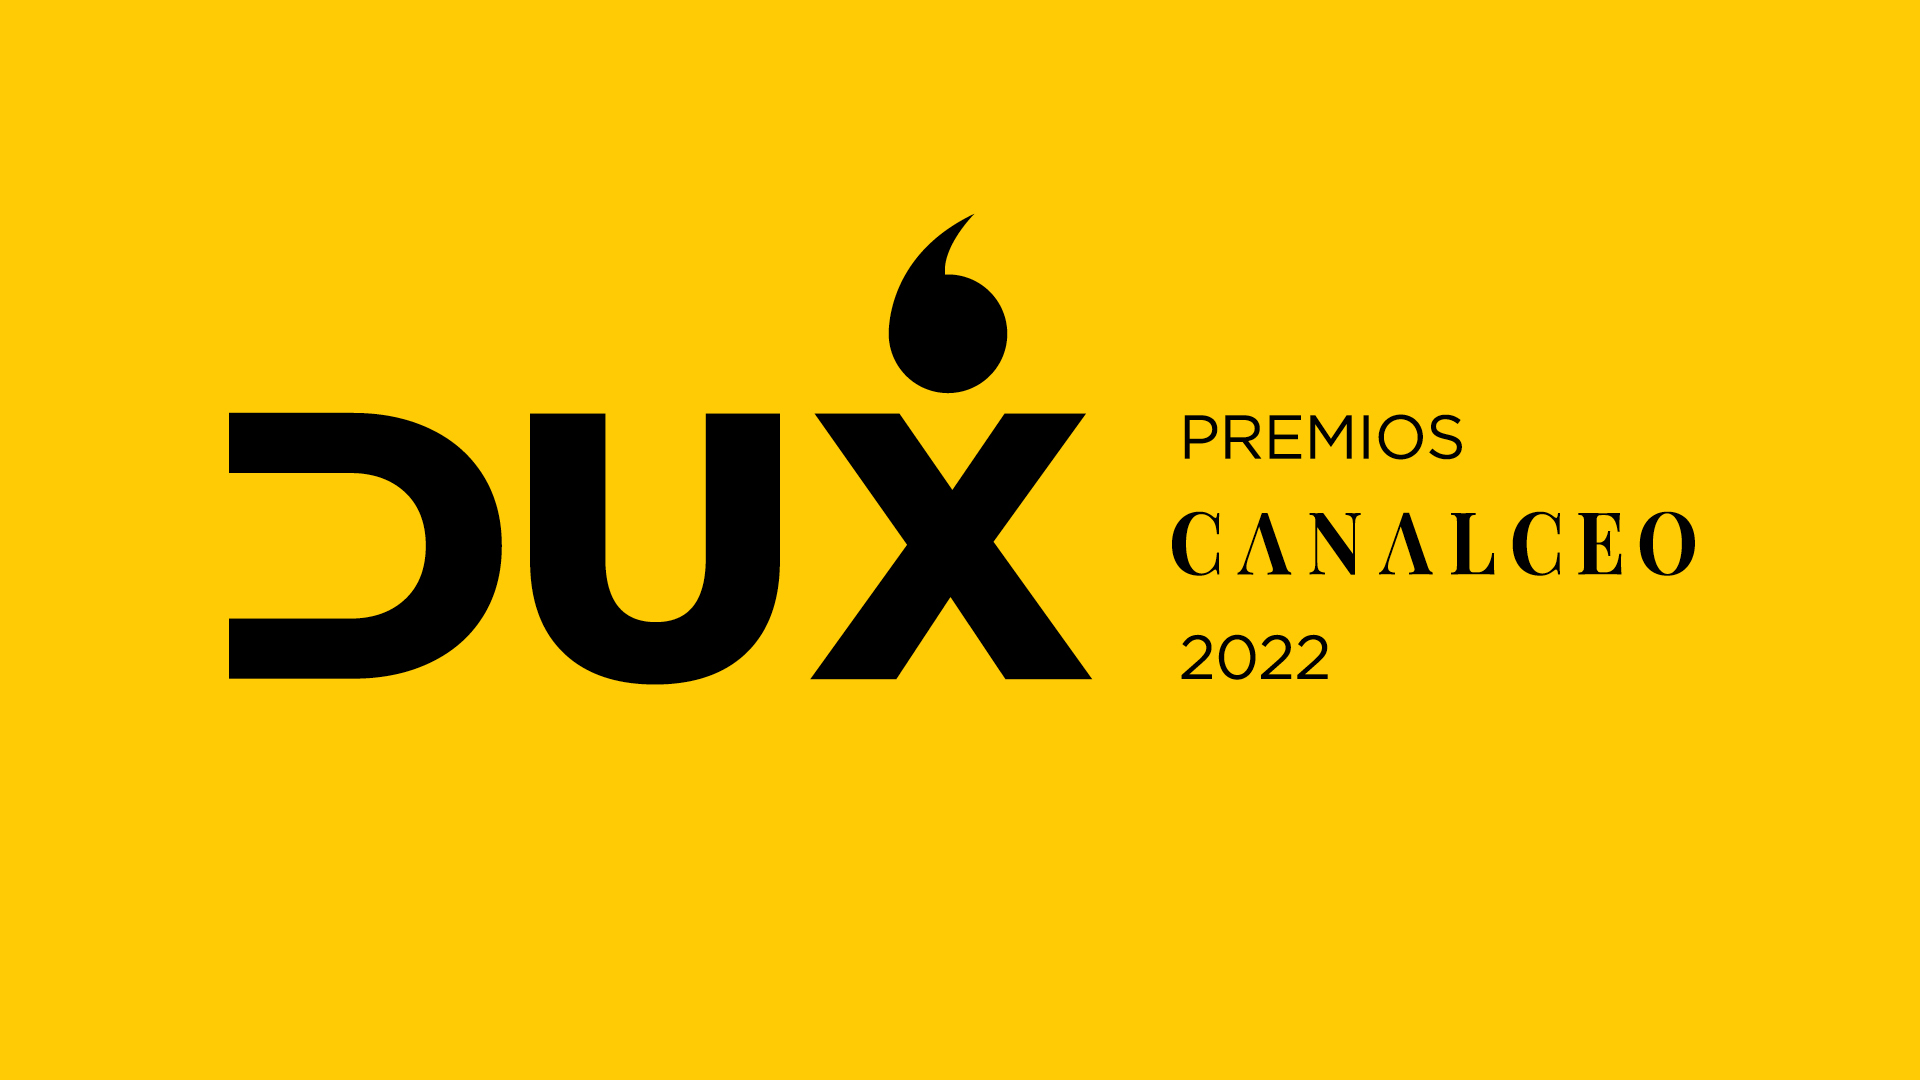 Premios DUX canal CEO